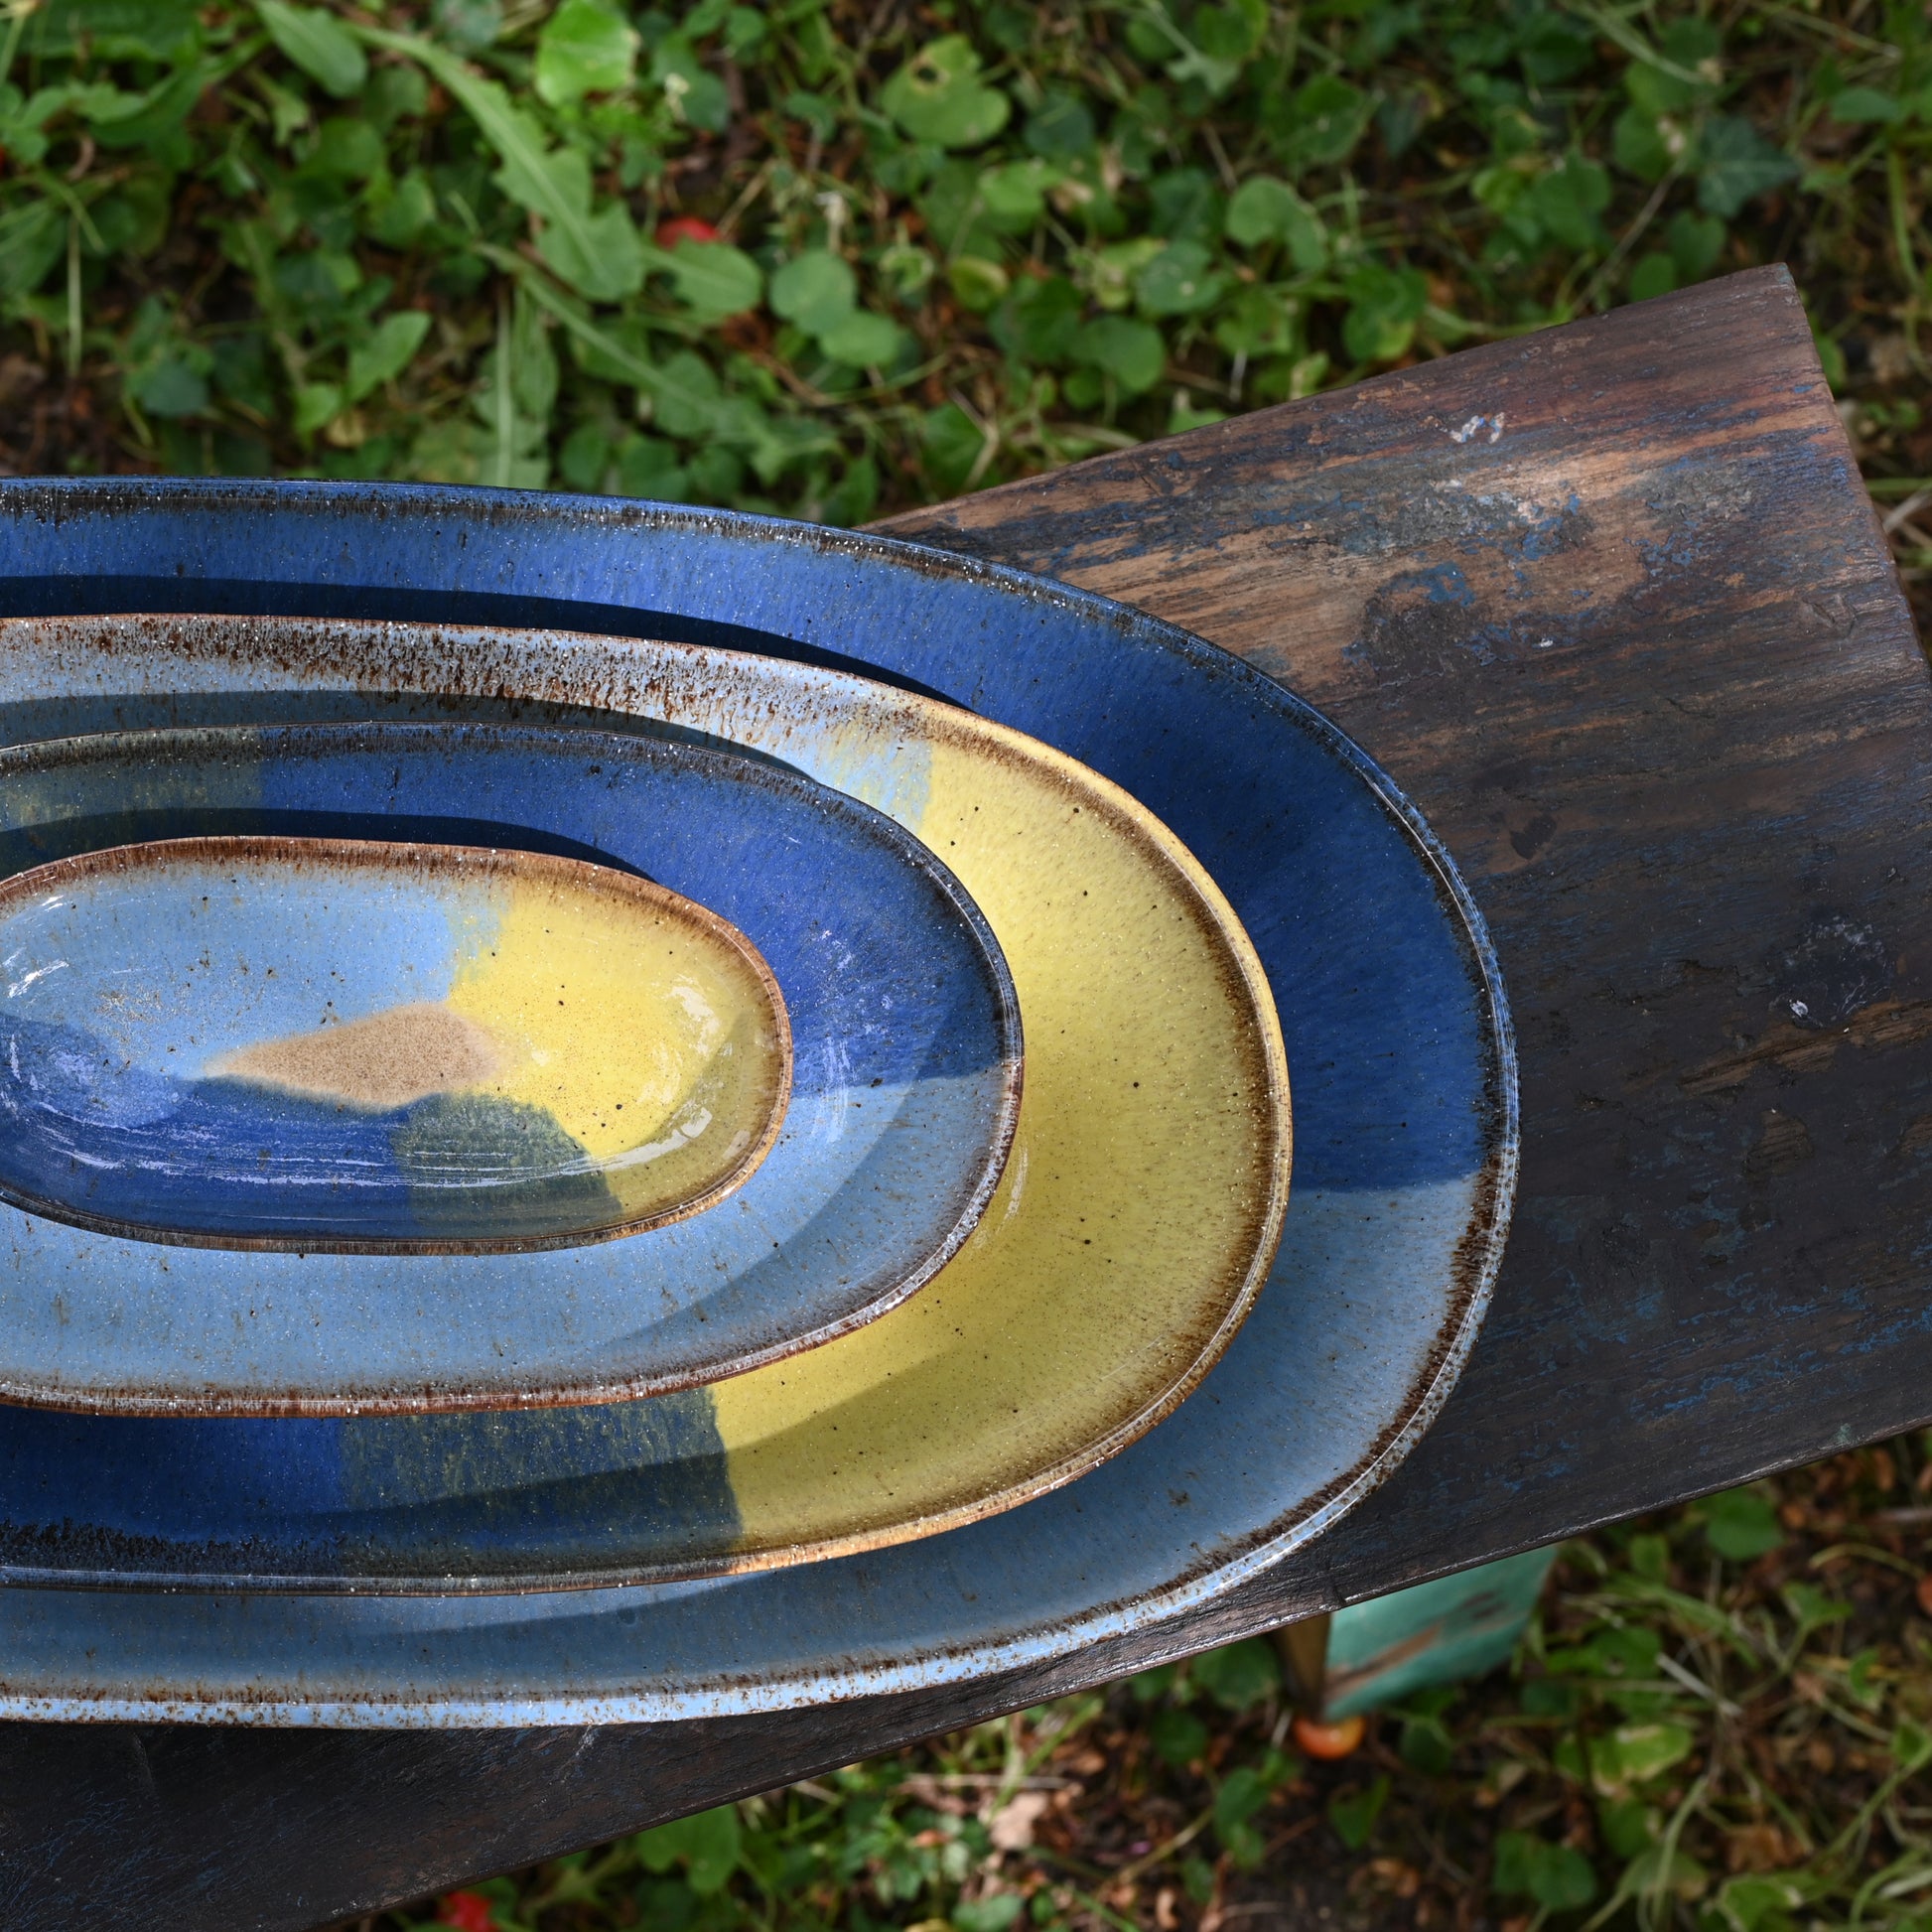 vue de dessus, 4 plats à service en grès naturel avec motif tricolore bleu profond, bleu ciel et jaune, empilés sur un banc dans un jardin